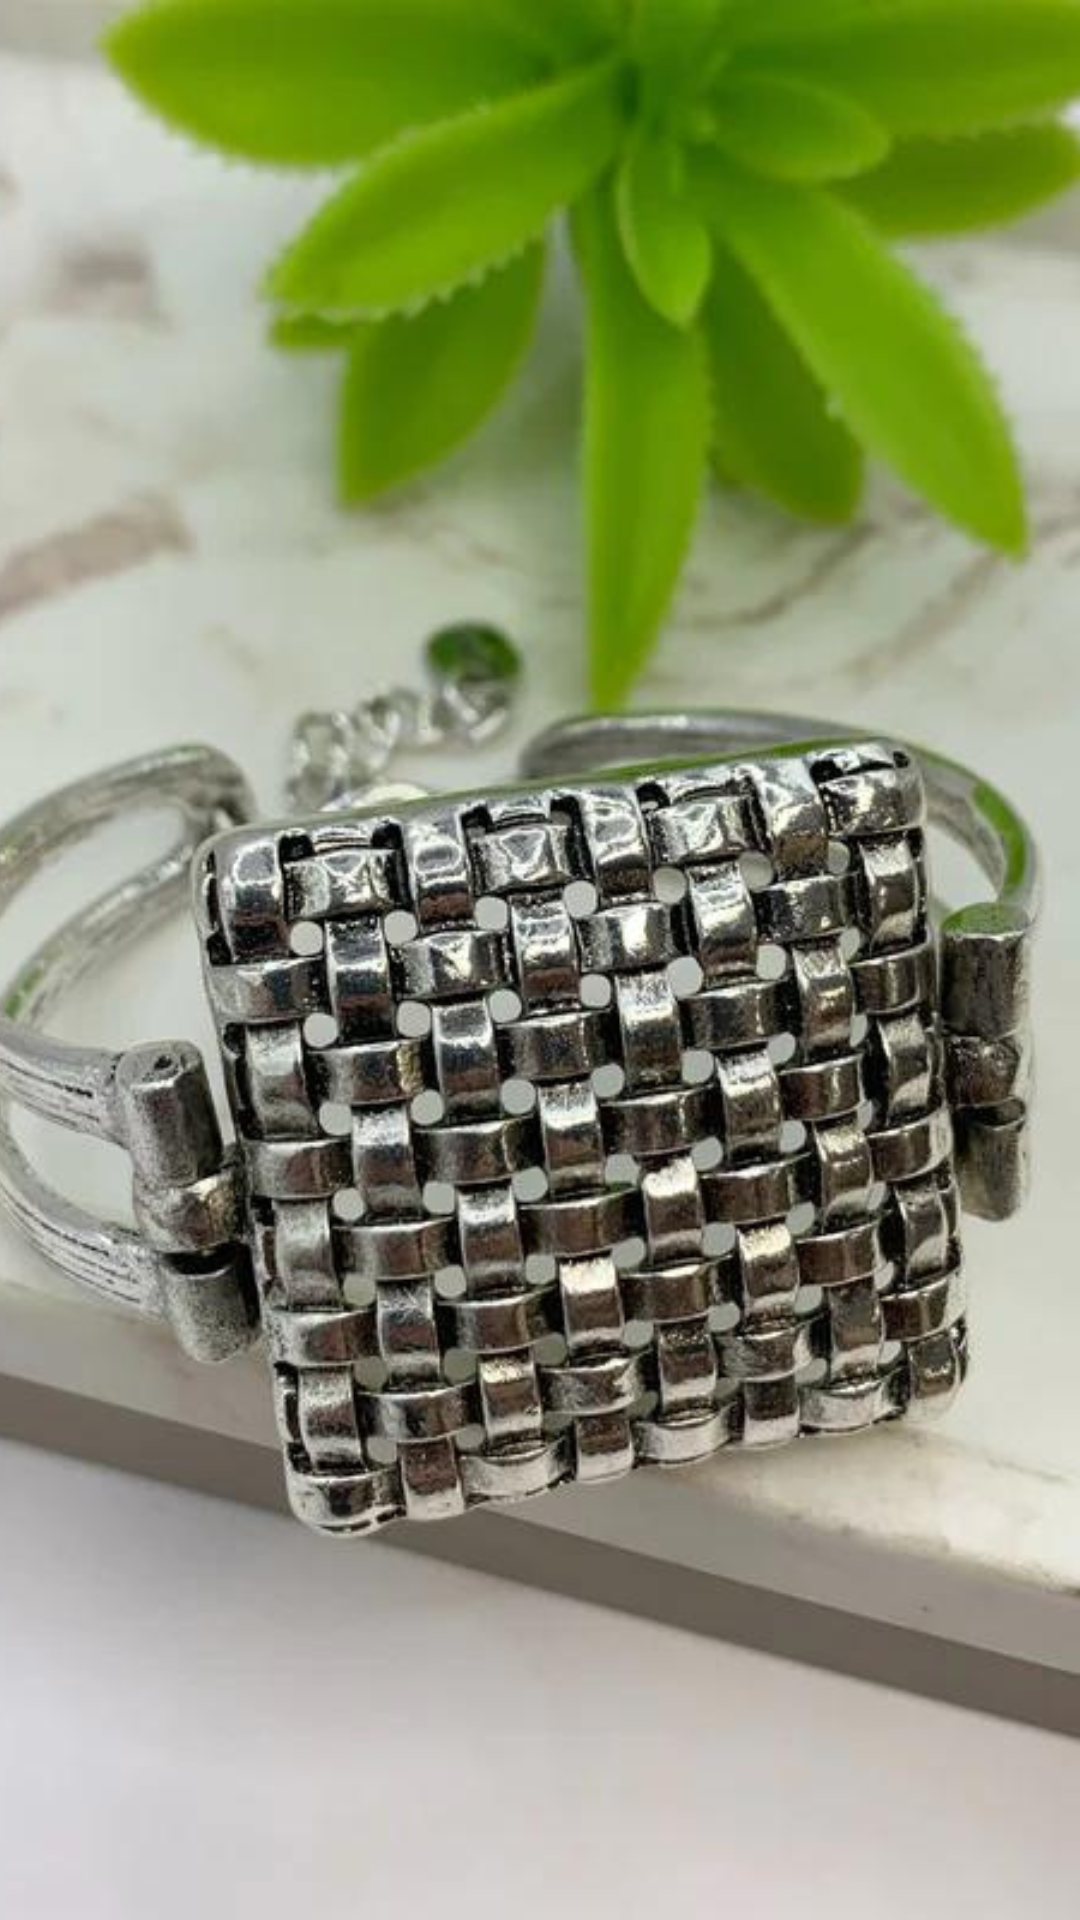 Knit Silver Bracelet